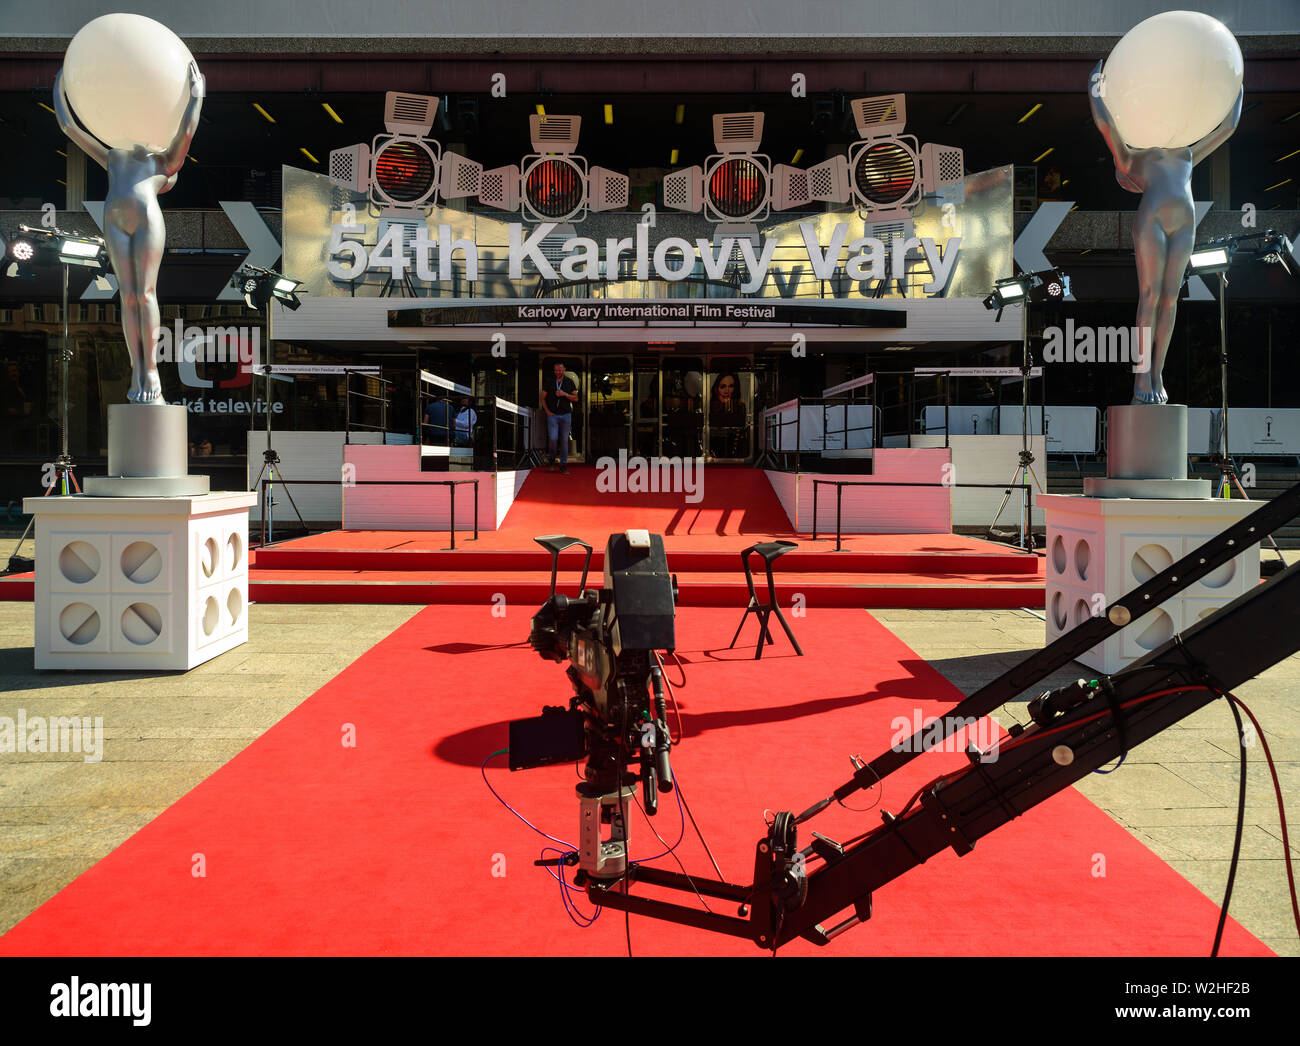 KARLOVY VARY, RÉPUBLIQUE TCHÈQUE - Juillet 02, 2019 : Le tapis rouge entrée de l'Hôtel Thermal 54e Festival International du Film de Karlovy Vary est illustré sur J Banque D'Images